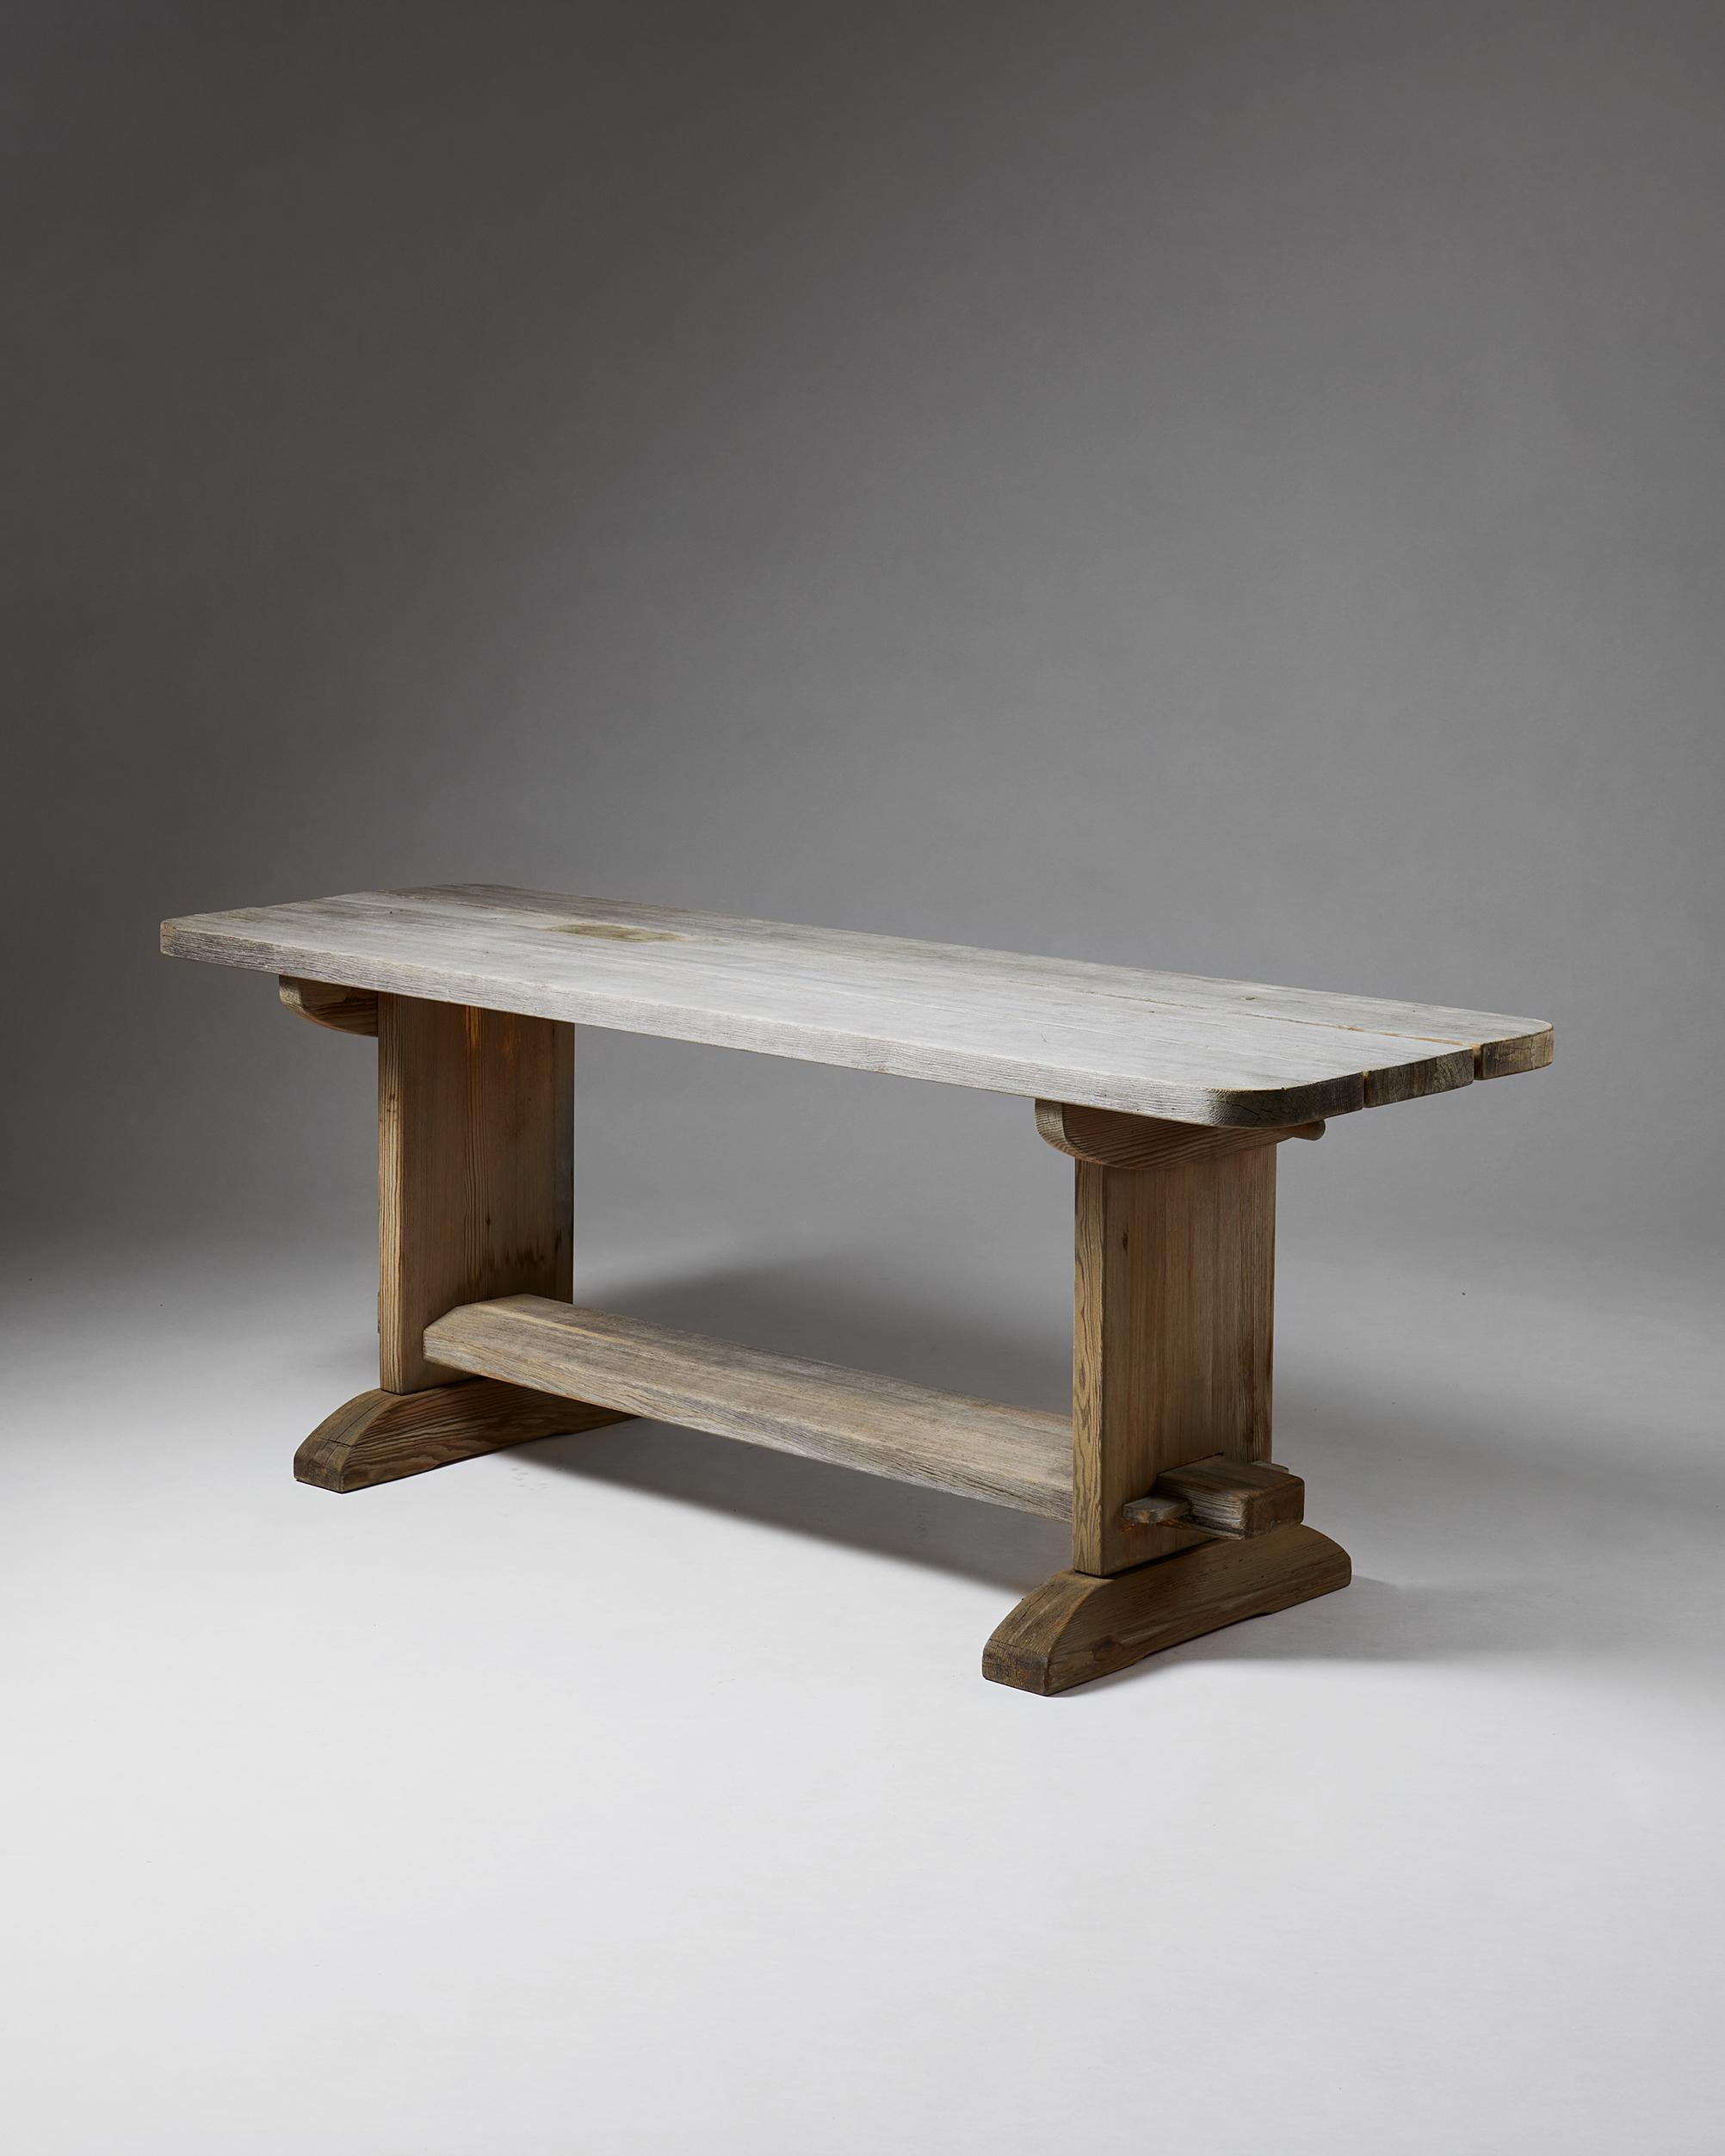 Dining table “Skoga” designed by Axel-Einar Hjorth,
Sweden, 1932.
Pine.

Provenance: Professor Göran Liljestrand.

Measures: L 180 cm/ 5' 11 3/8